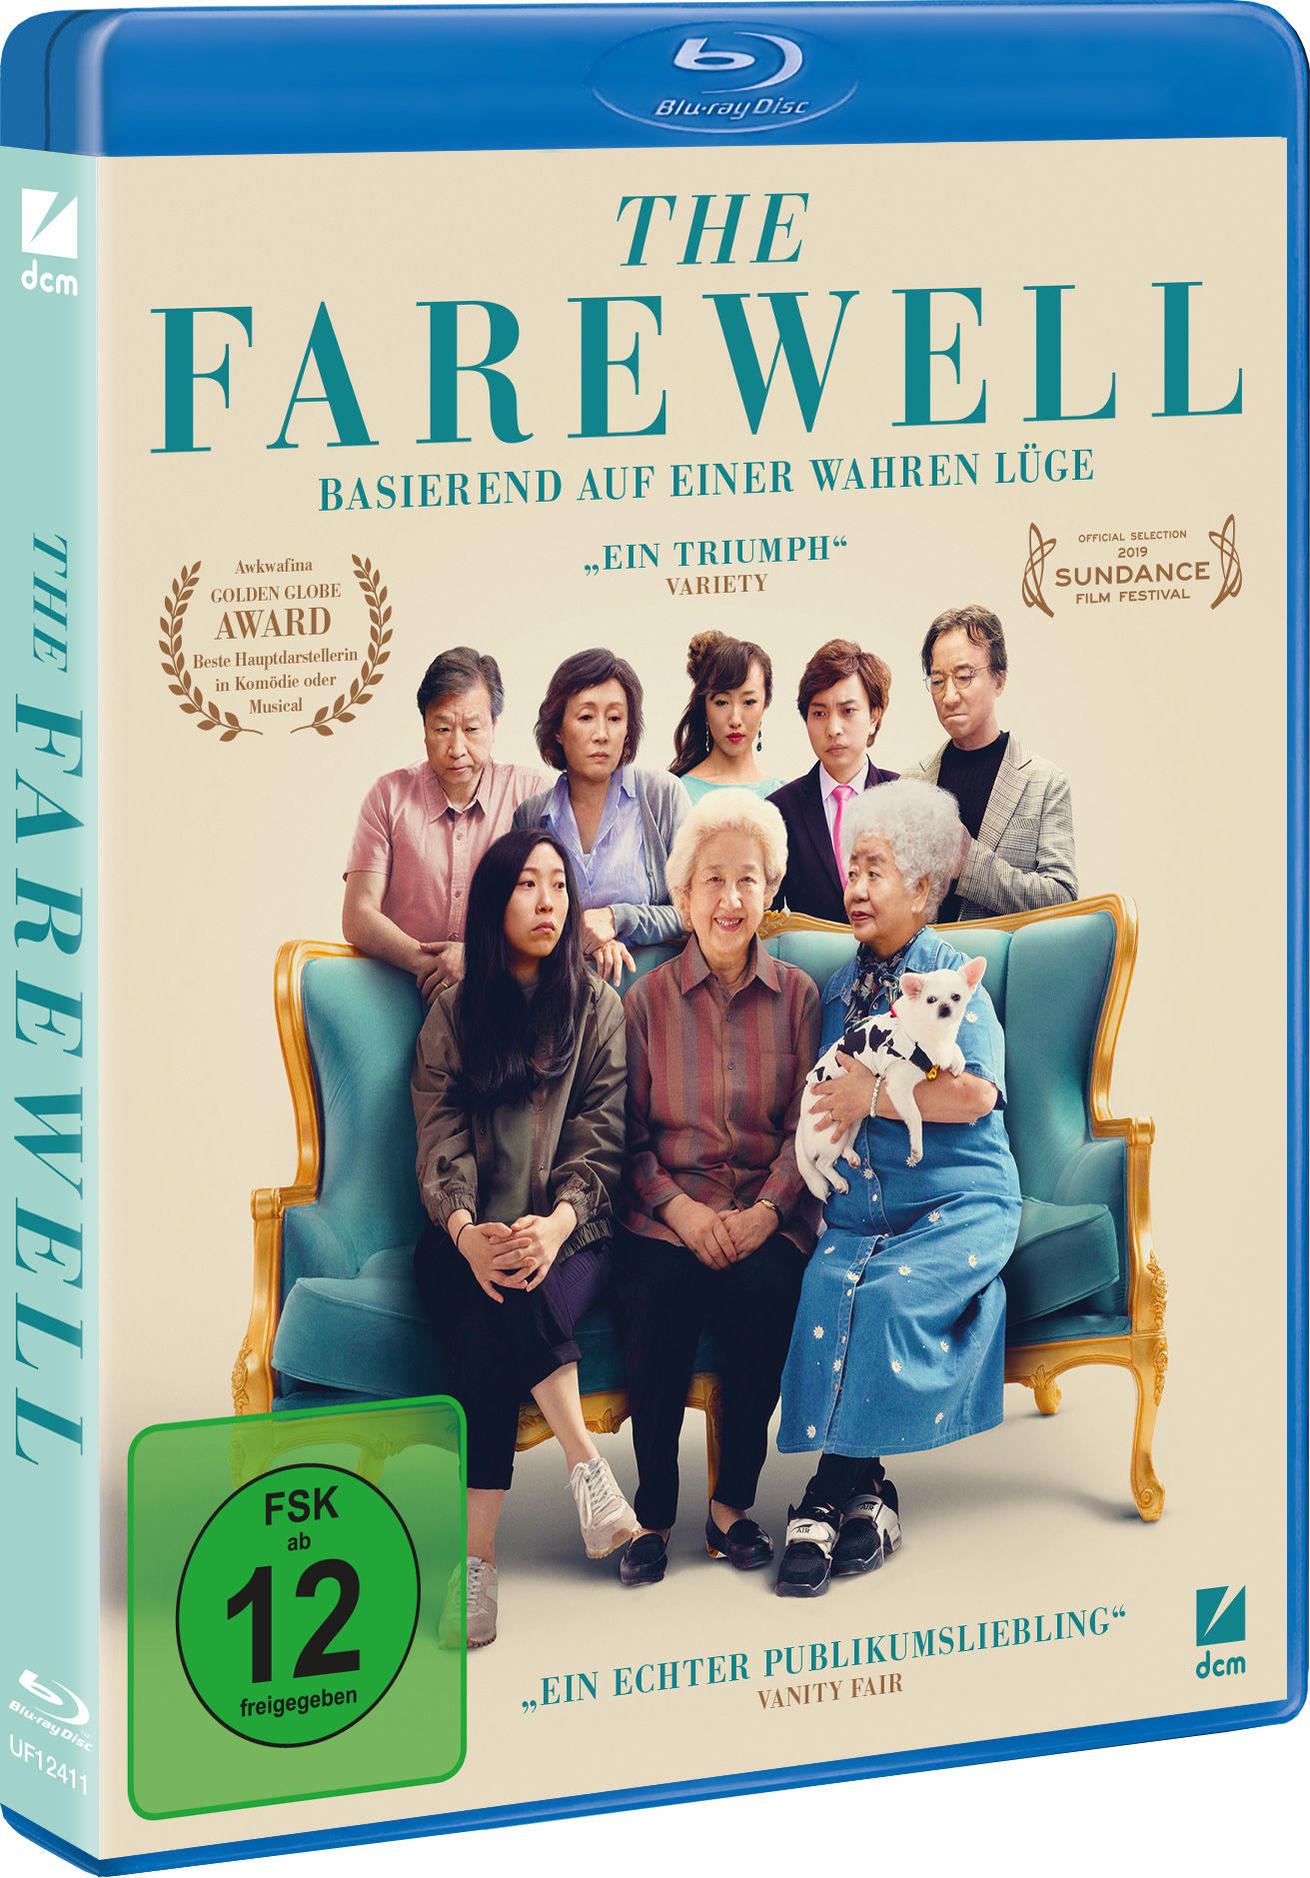 Farewell The Blu-ray